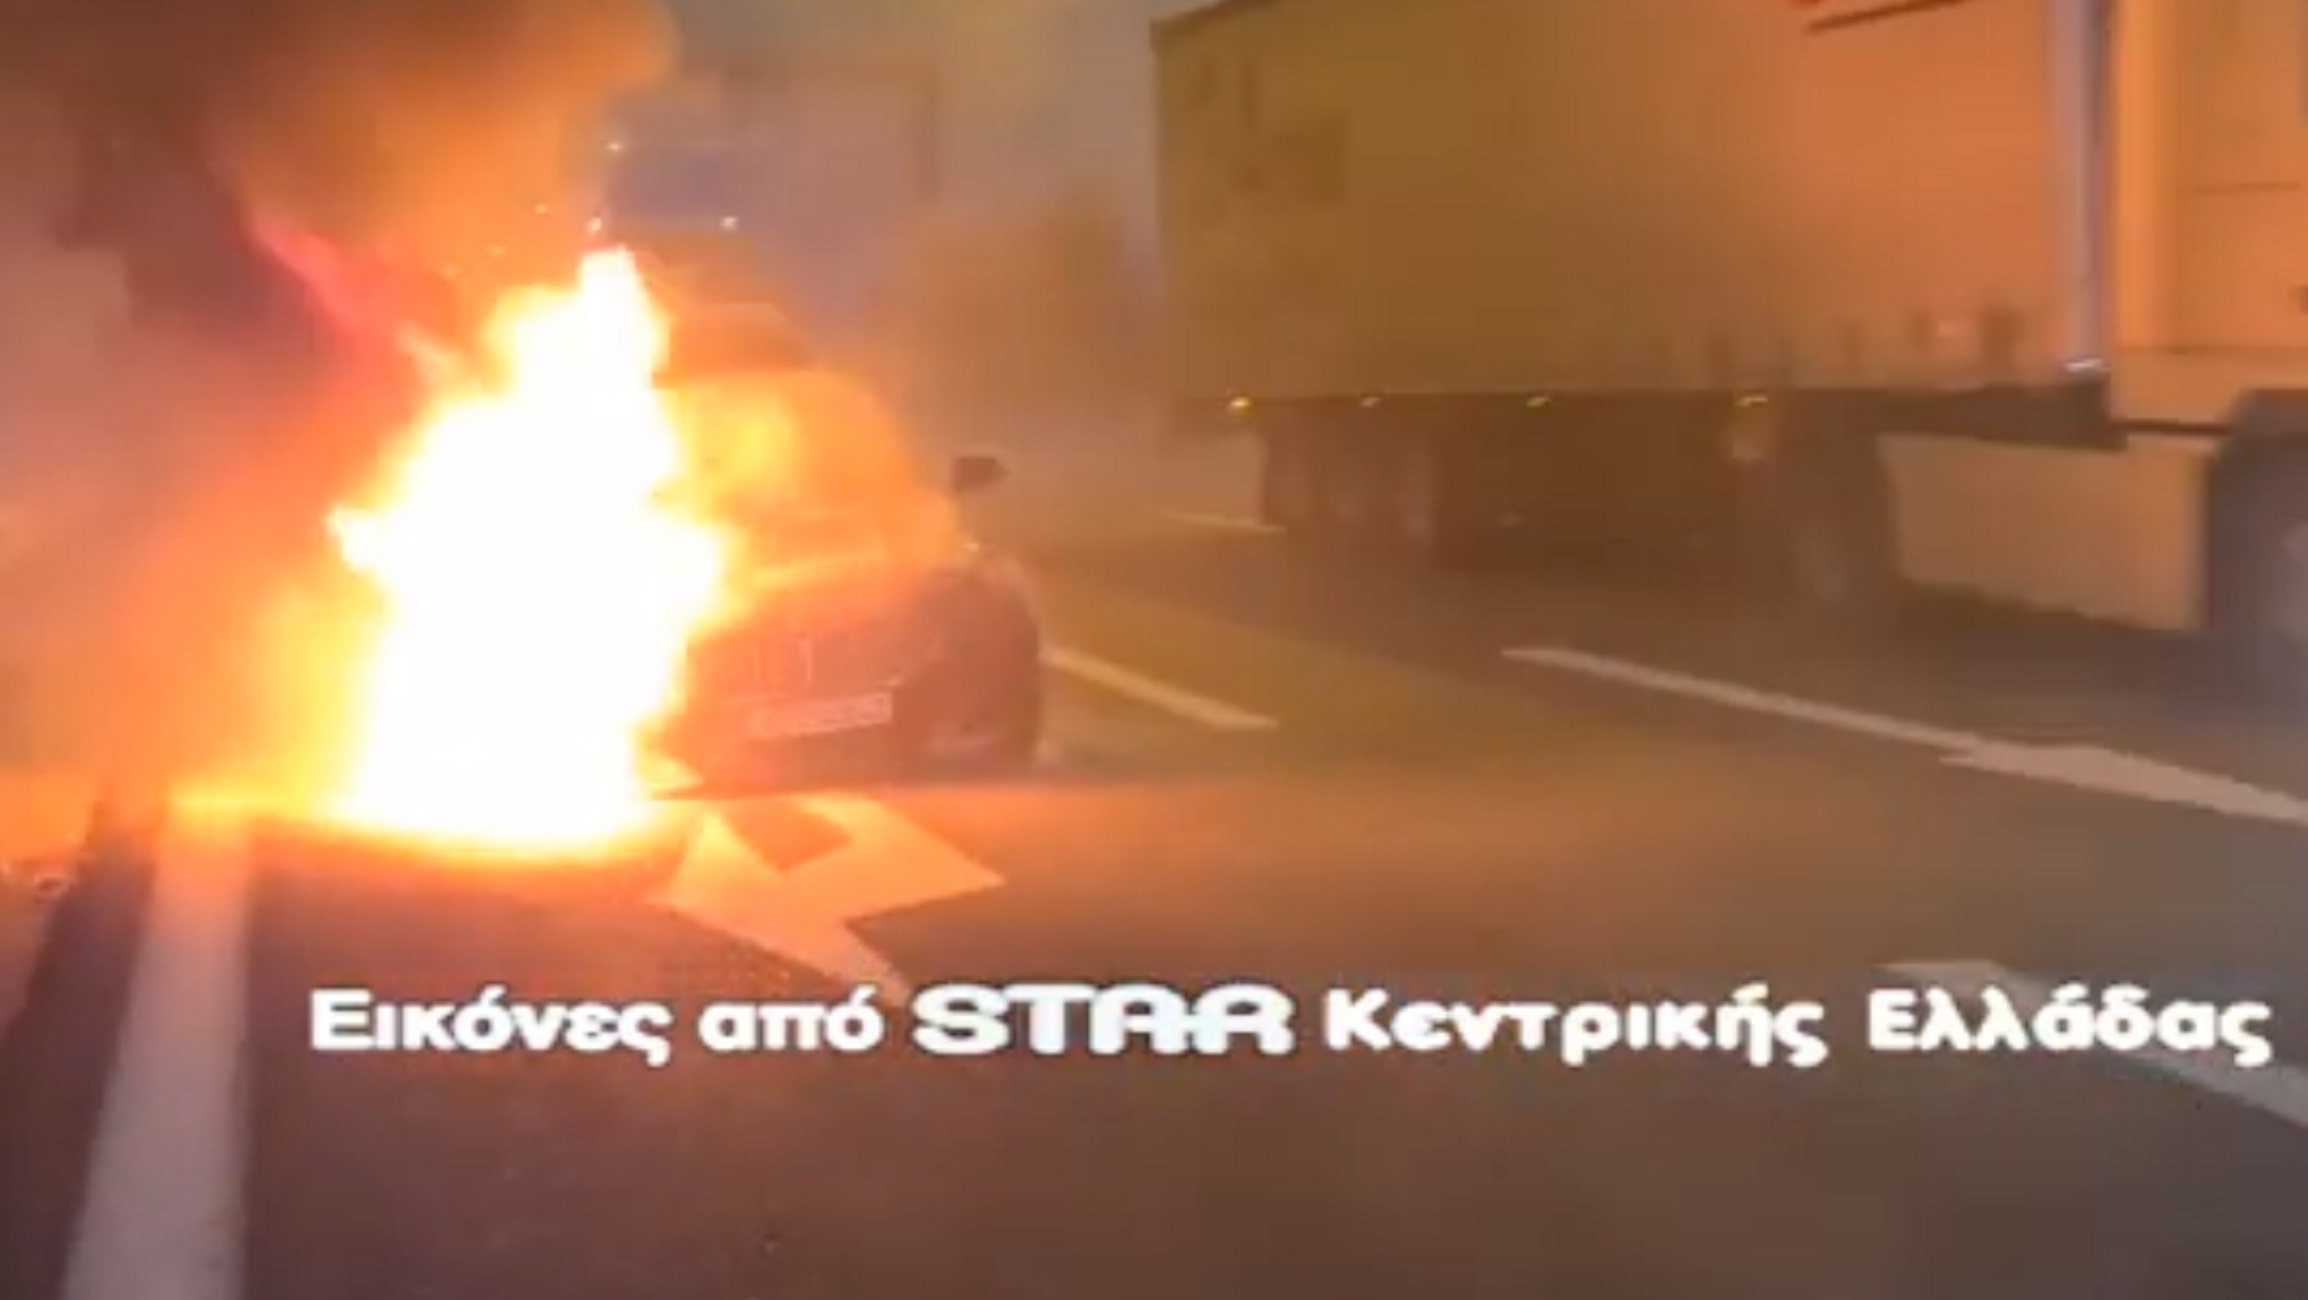 Εθνική Οδός: Αυτοκίνητο πιάνει φωτιά  στην Αθηνών – Λαμίας χωρίς ο οδηγός να το έχει καταλάβει